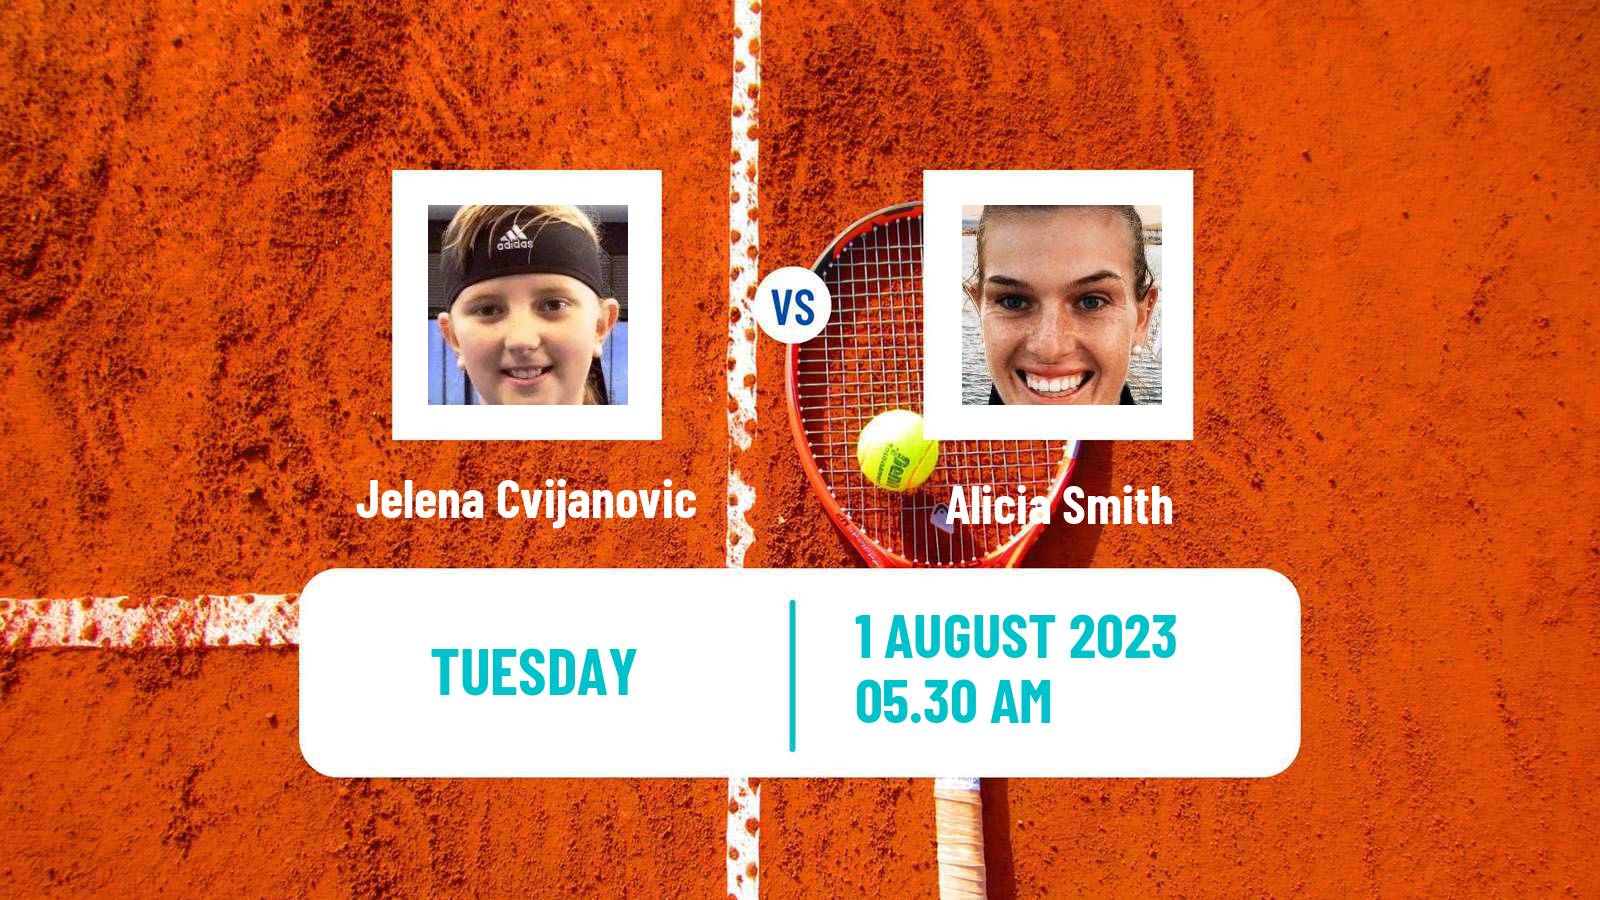 Tennis ITF W15 Caloundra 3 Women 2023 Jelena Cvijanovic - Alicia Smith